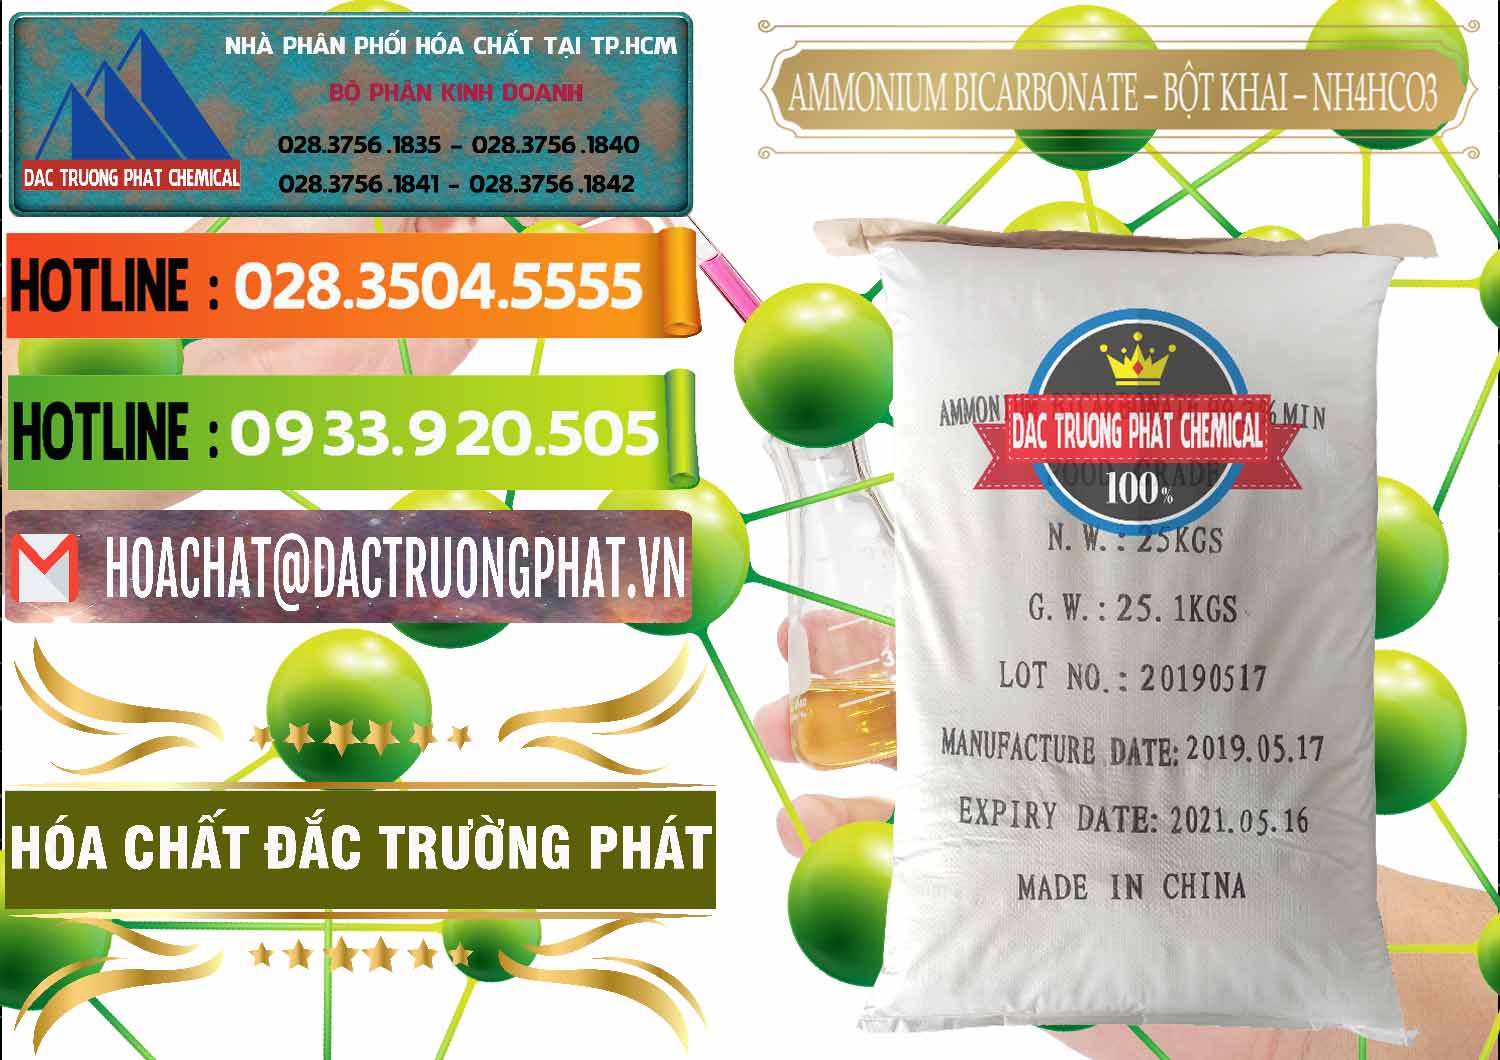 Nơi chuyên phân phối - bán Ammonium Bicarbonate - Bột Khai Food Grade Trung Quốc China - 0018 - Bán và phân phối hóa chất tại TP.HCM - cungcaphoachat.com.vn